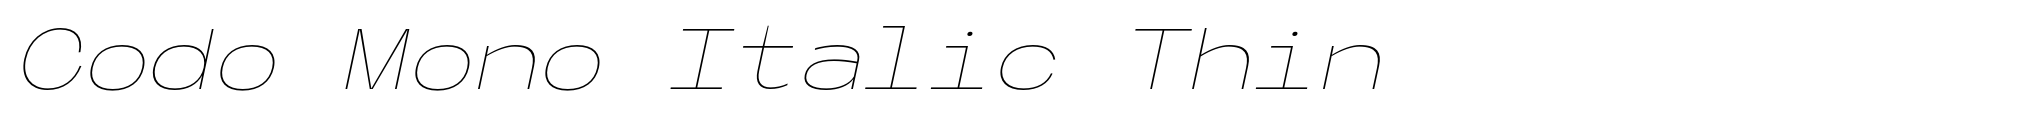 Codo Mono Italic Thin image